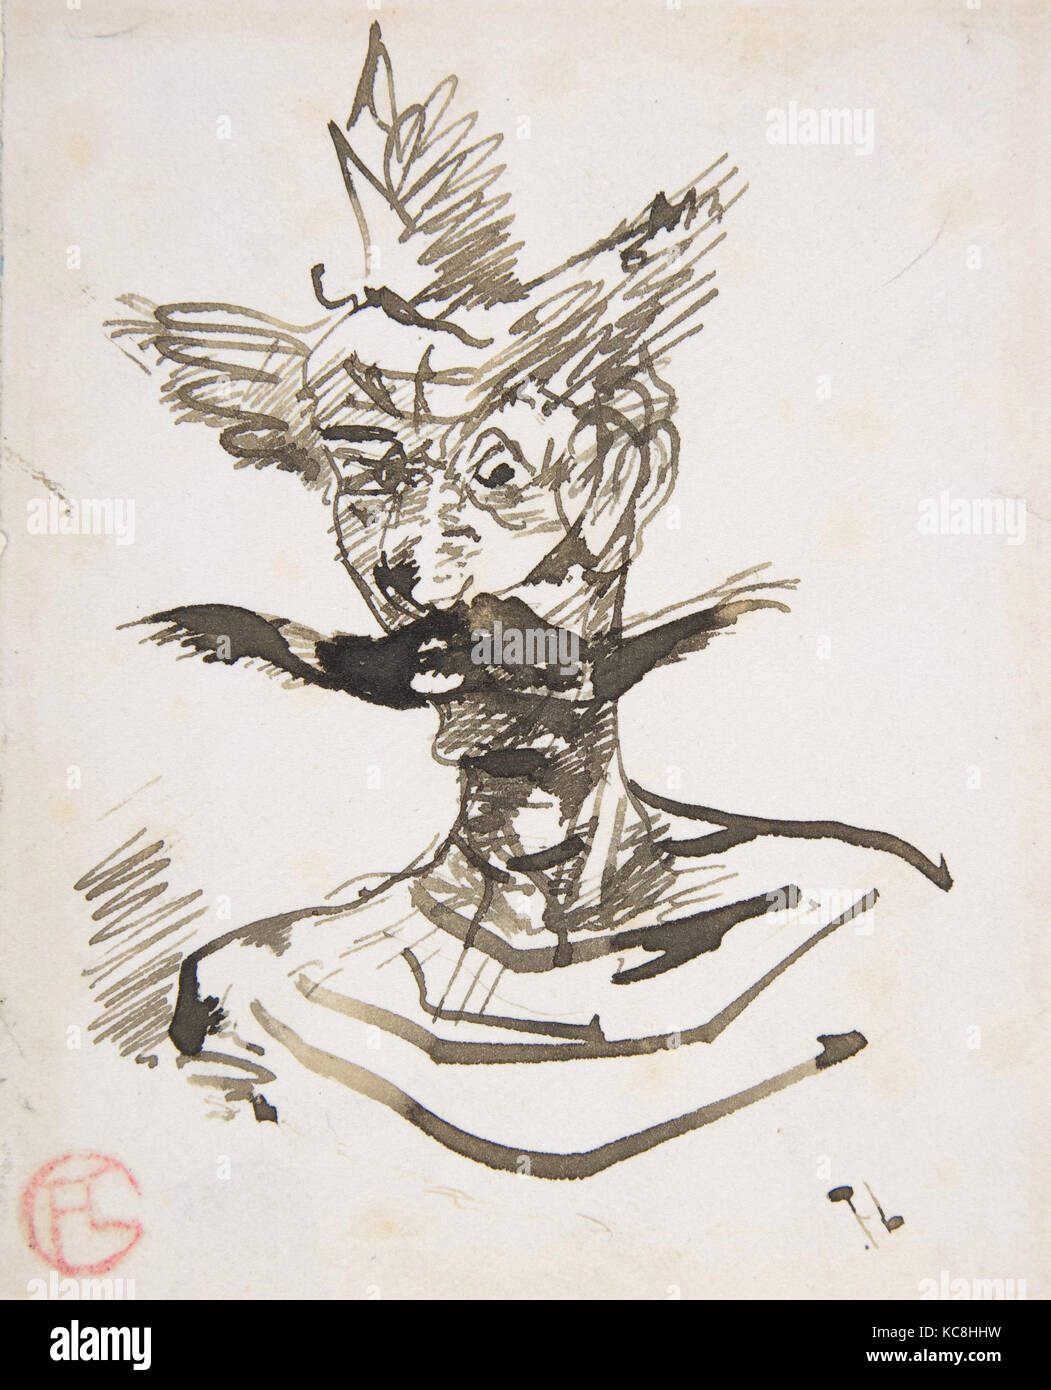 The Clown: M. Joret, Henri de Toulouse-Lautrec, 1885 Stock Photo